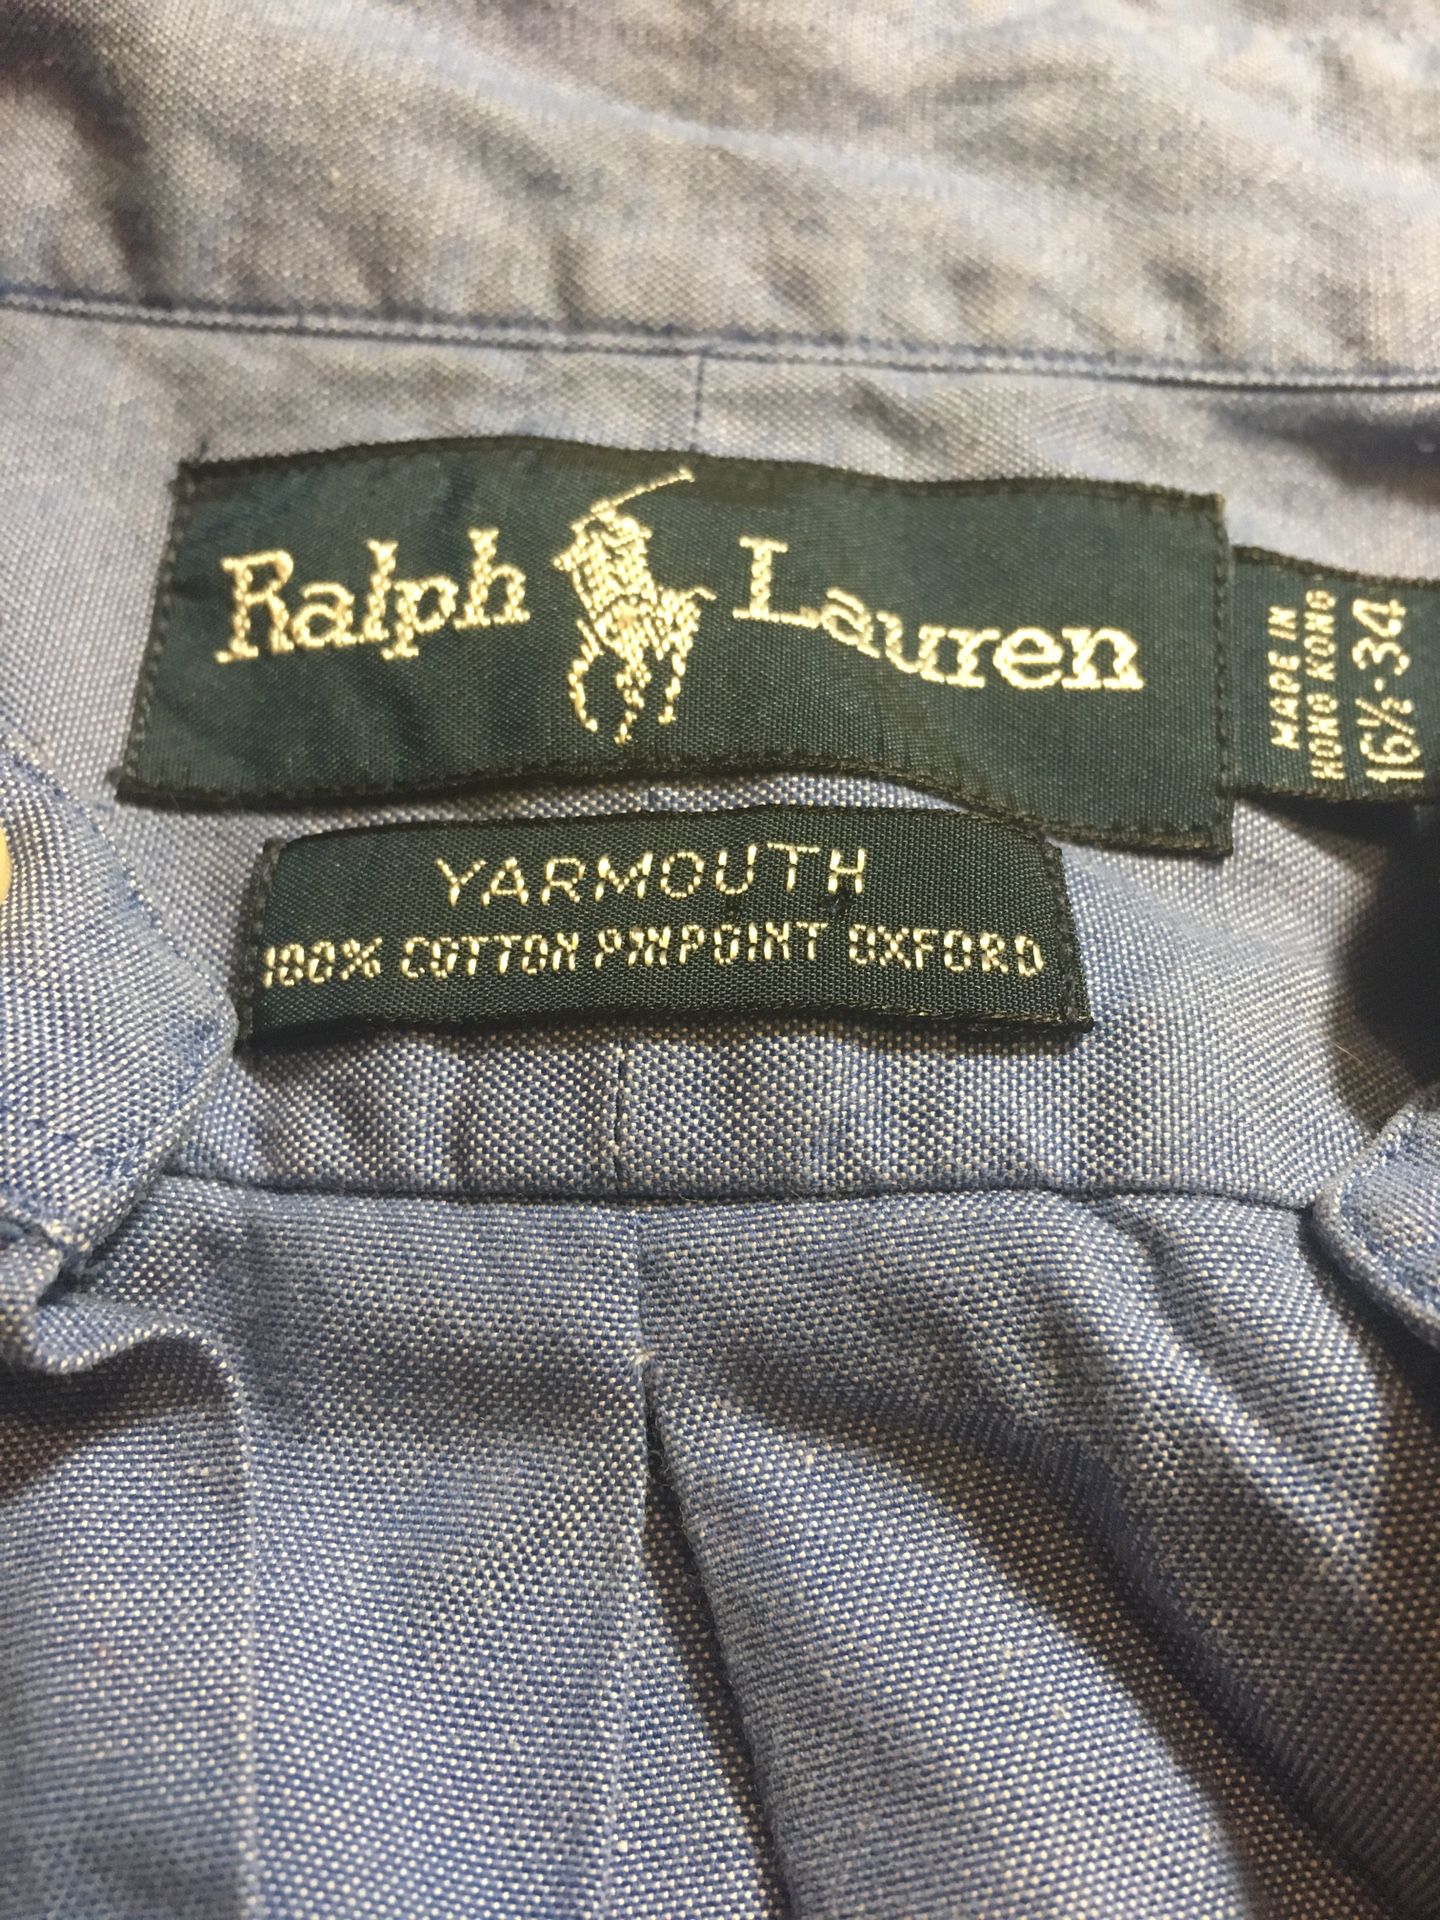 Men’s Ralph Lauren Polo button up shirt